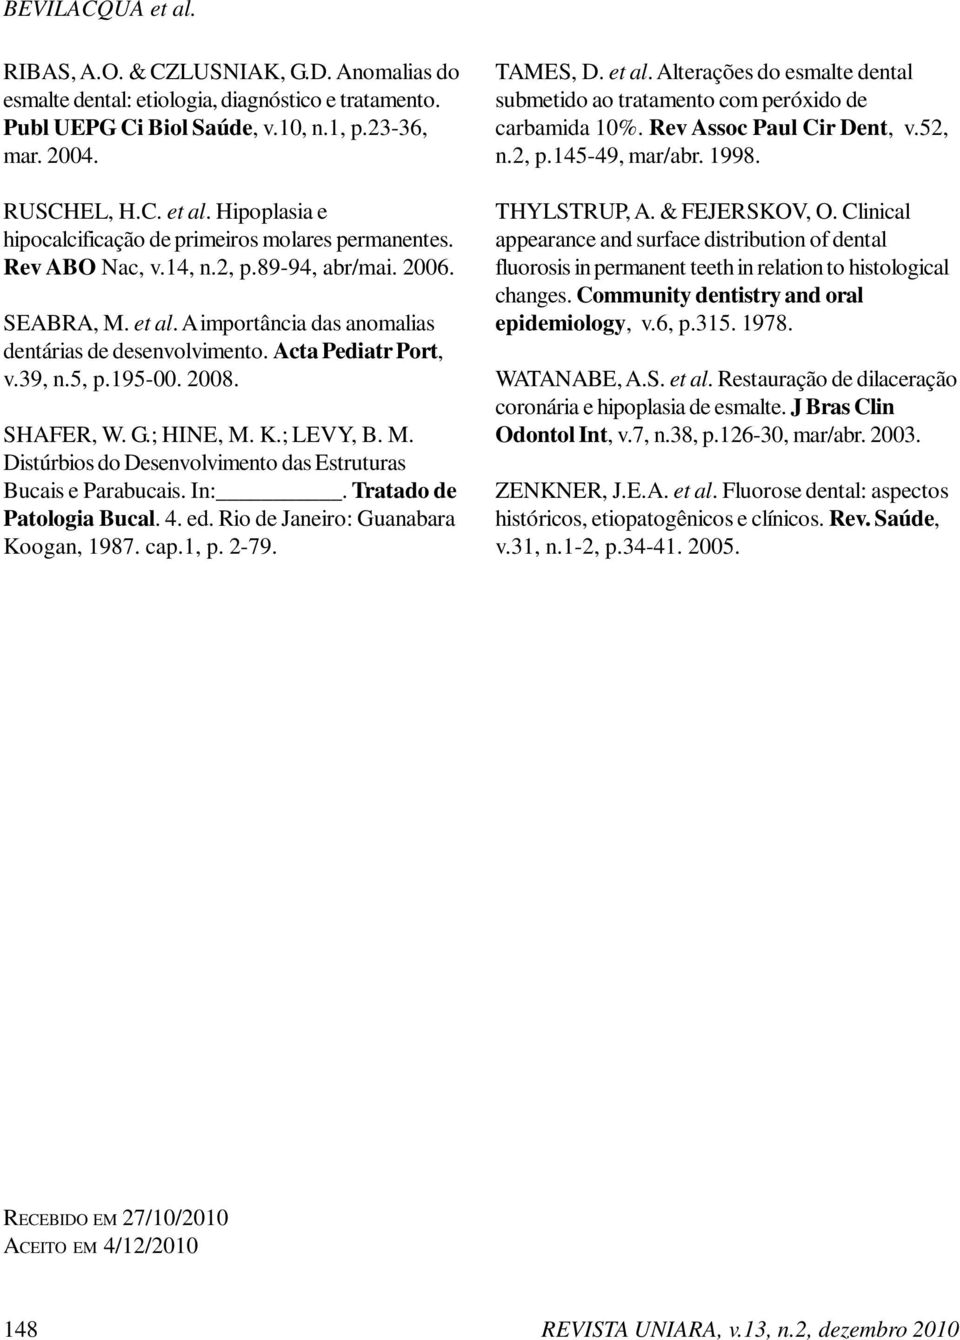 ; LEVY, B. M. Distúrbios do Desenvolvimento das Estruturas Bucais e Parabucais. In:. Tratado de Patologia Bucal. 4. ed. Rio de Janeiro: Guanabara Koogan, 1987. cap.1, p. 2-79. TAMES, D. et al.